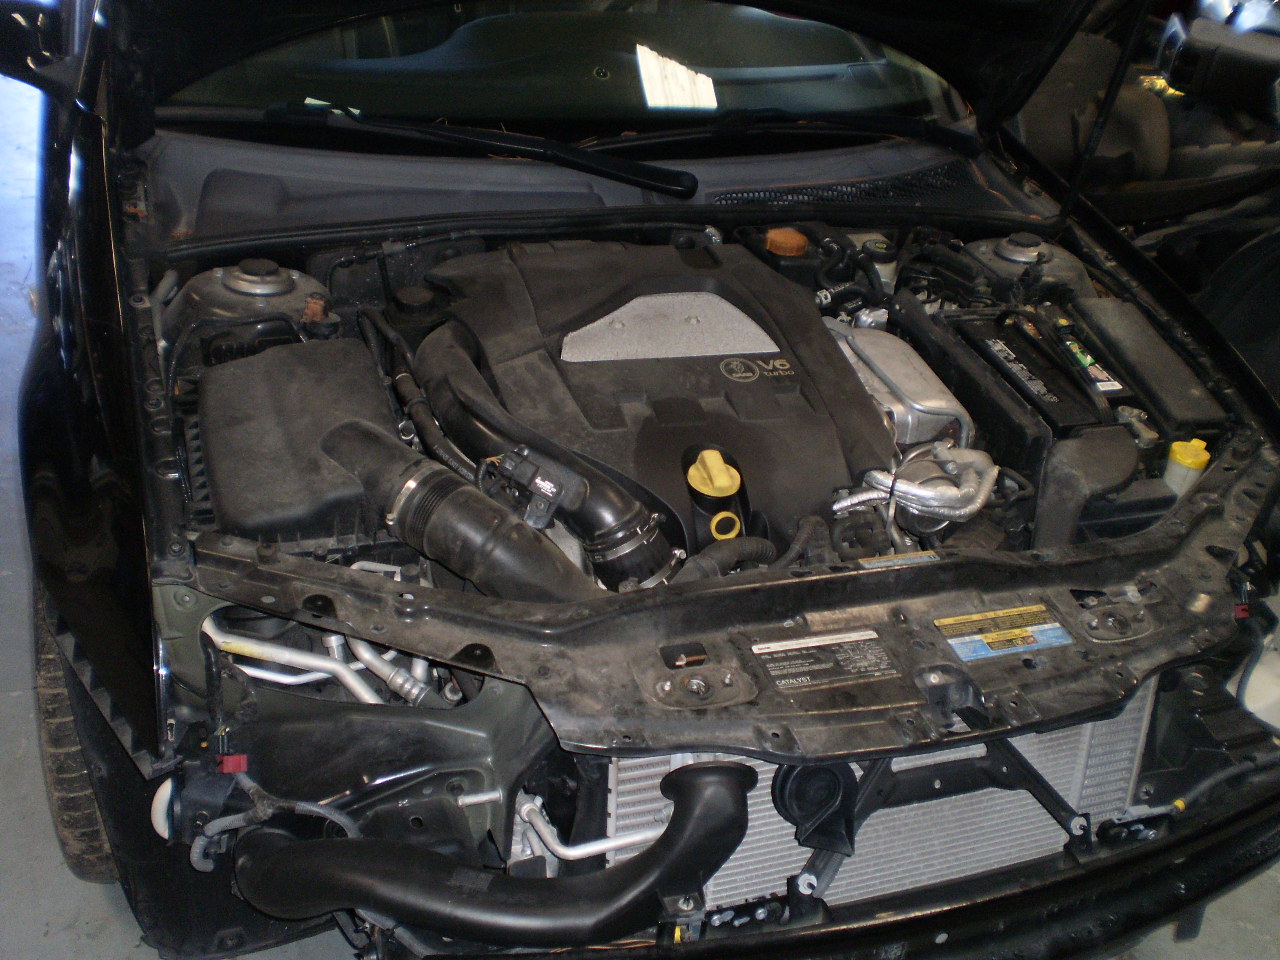 2006 SAAB 9-3 V6 2.8T W/44K